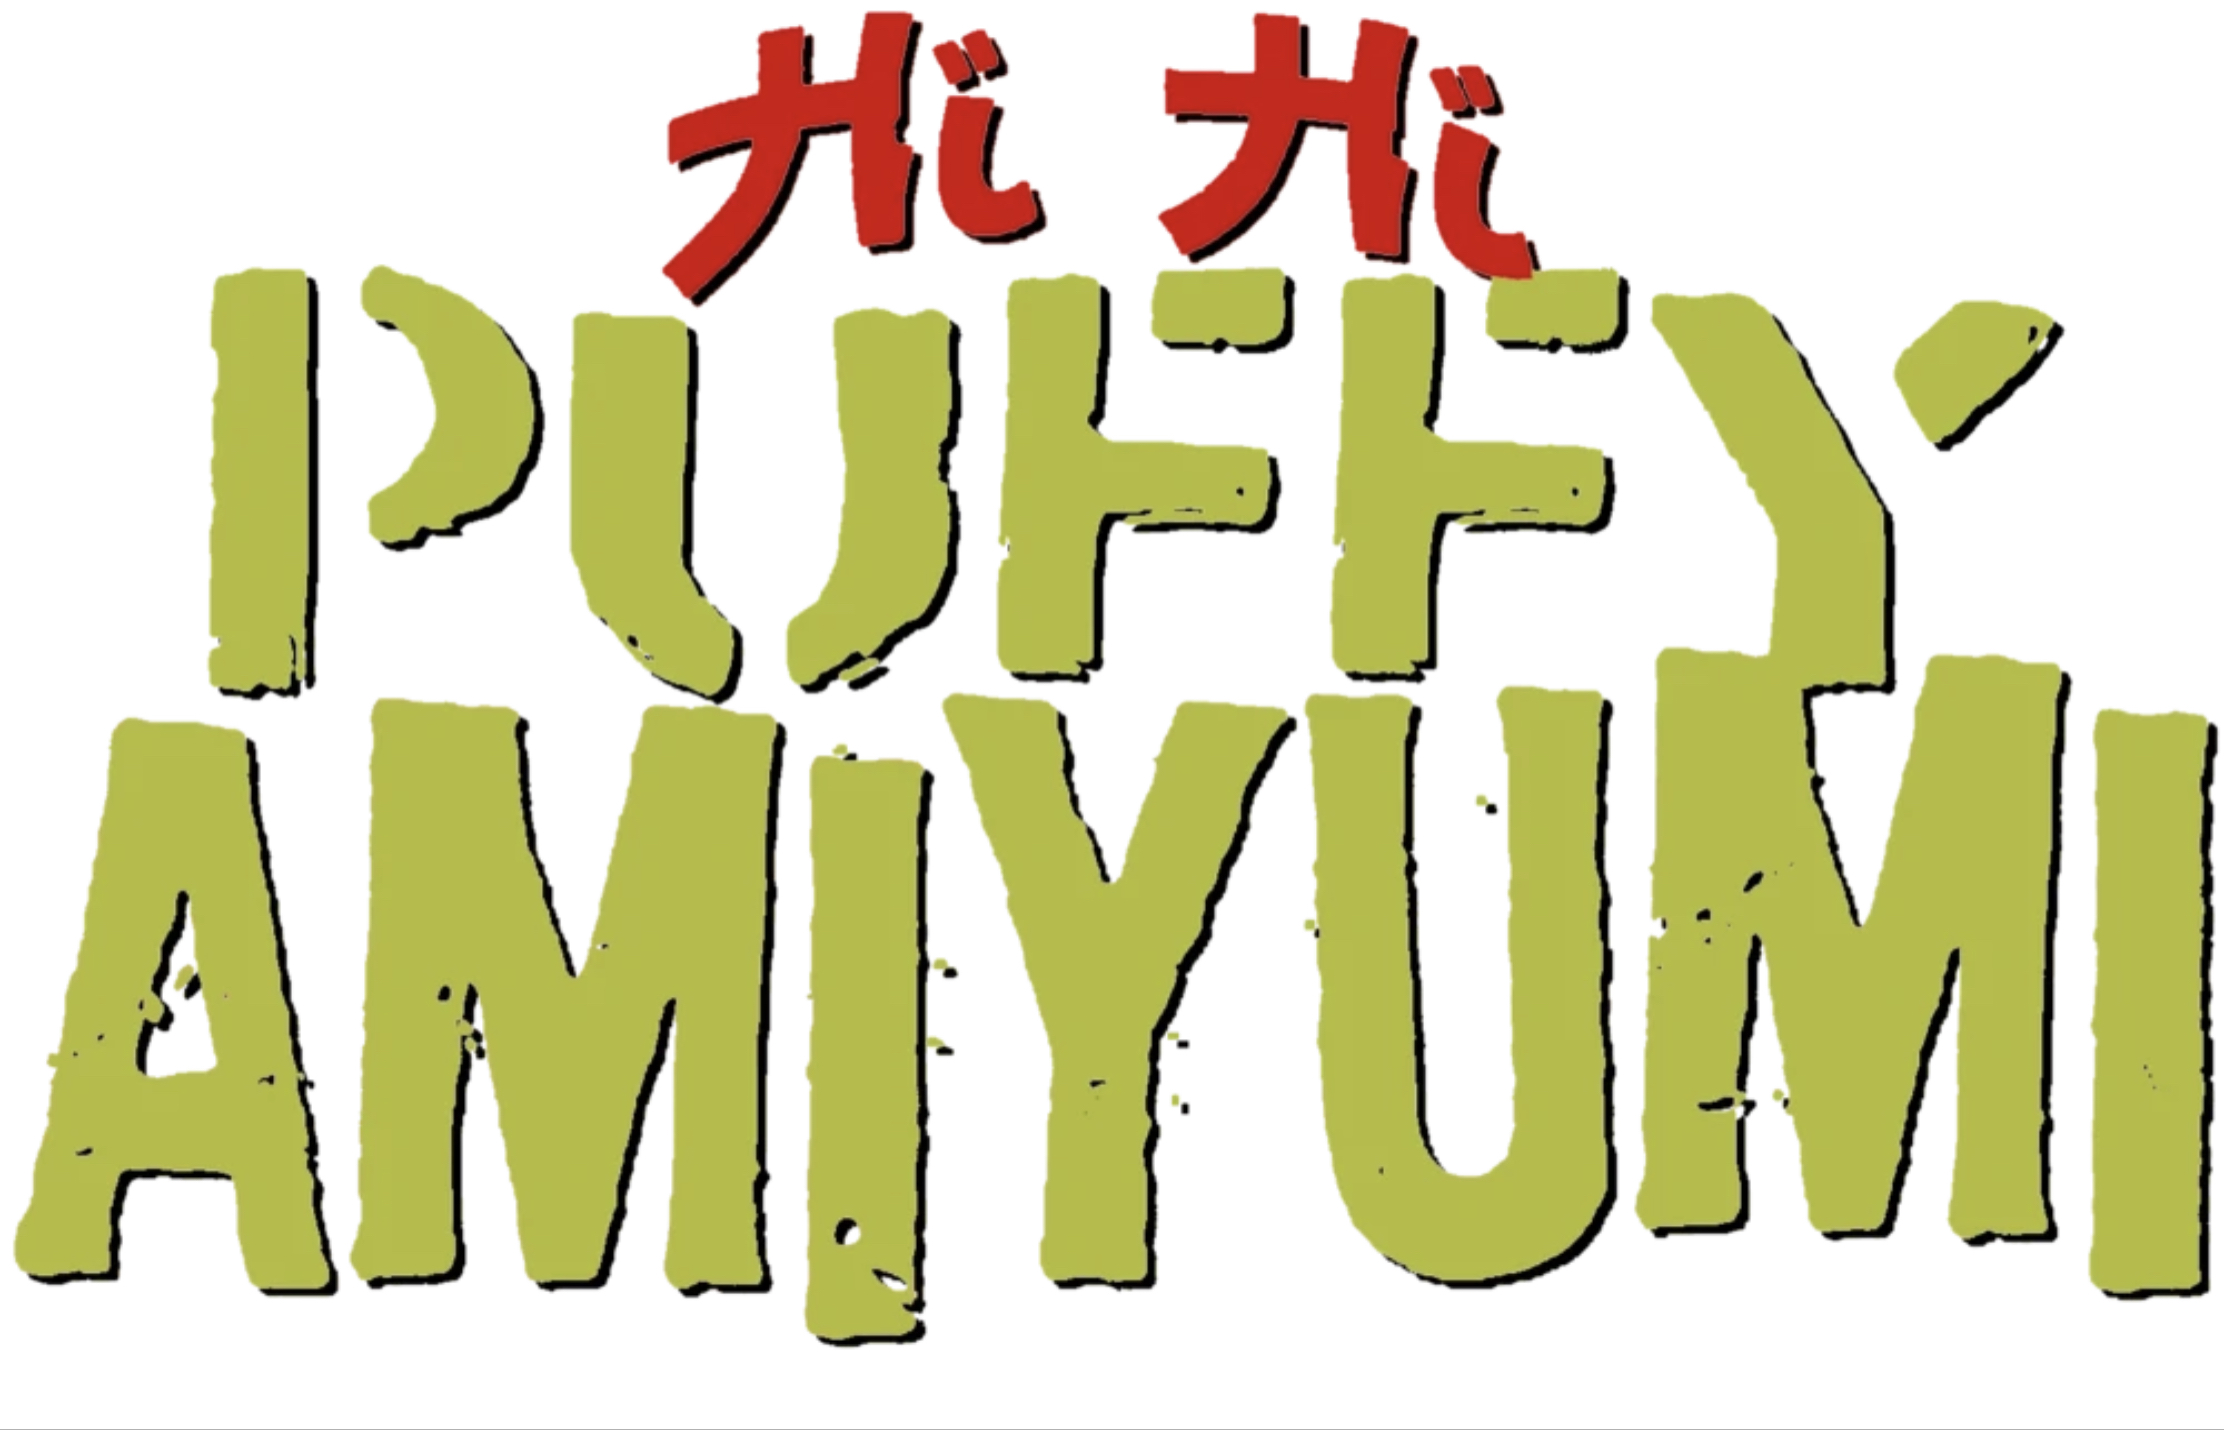 Puffy AmiYumi, Teen Titans Wiki